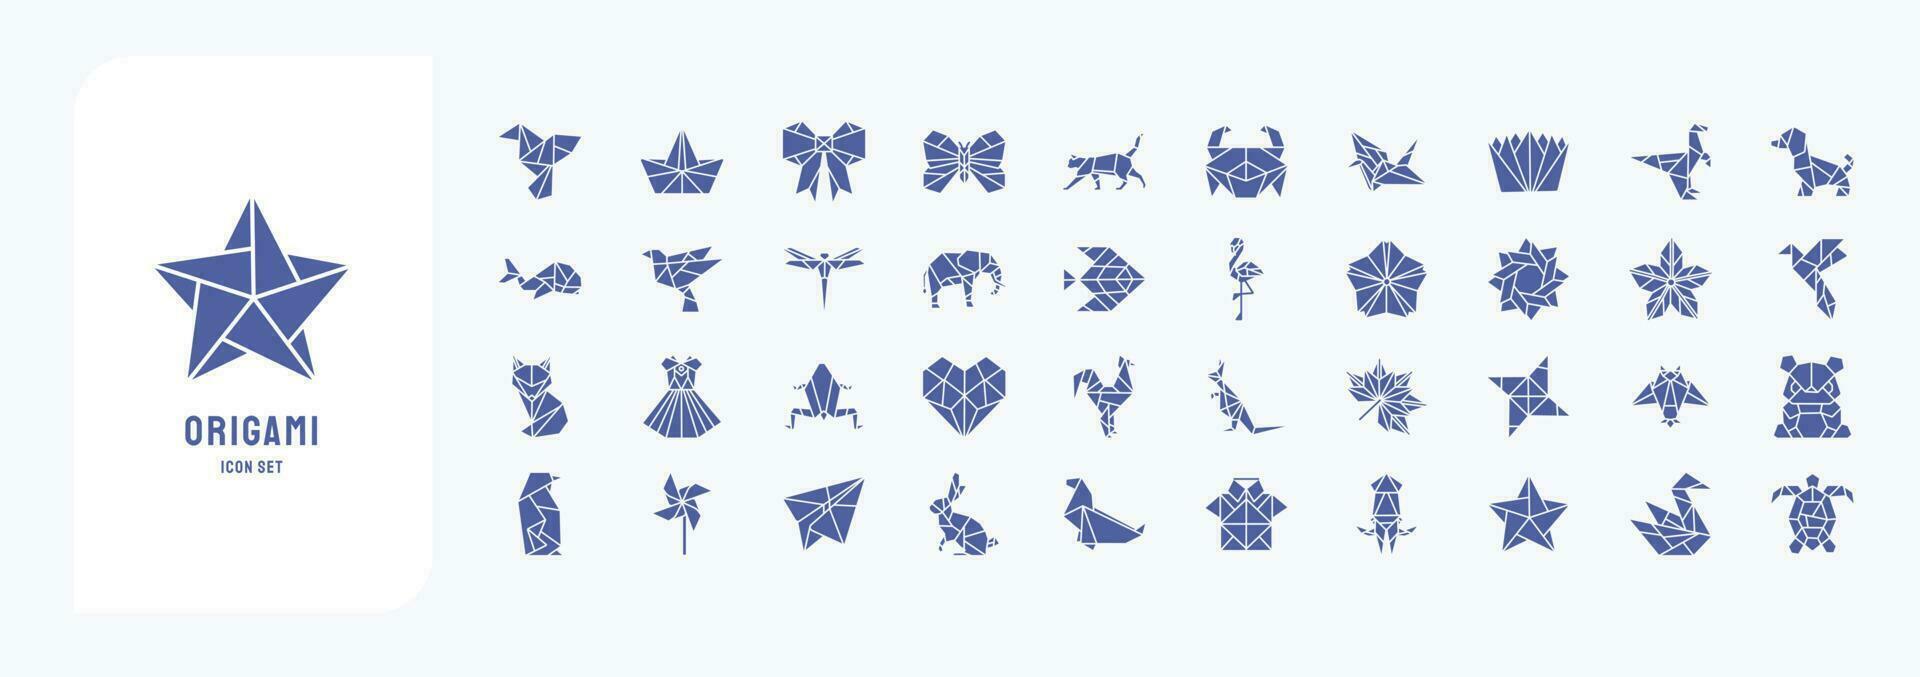 Sammlung von Symbole verbunden zu Origami, einschließlich Symbole mögen Vogel, Boot, Schmetterling, Katze und Mehr vektor